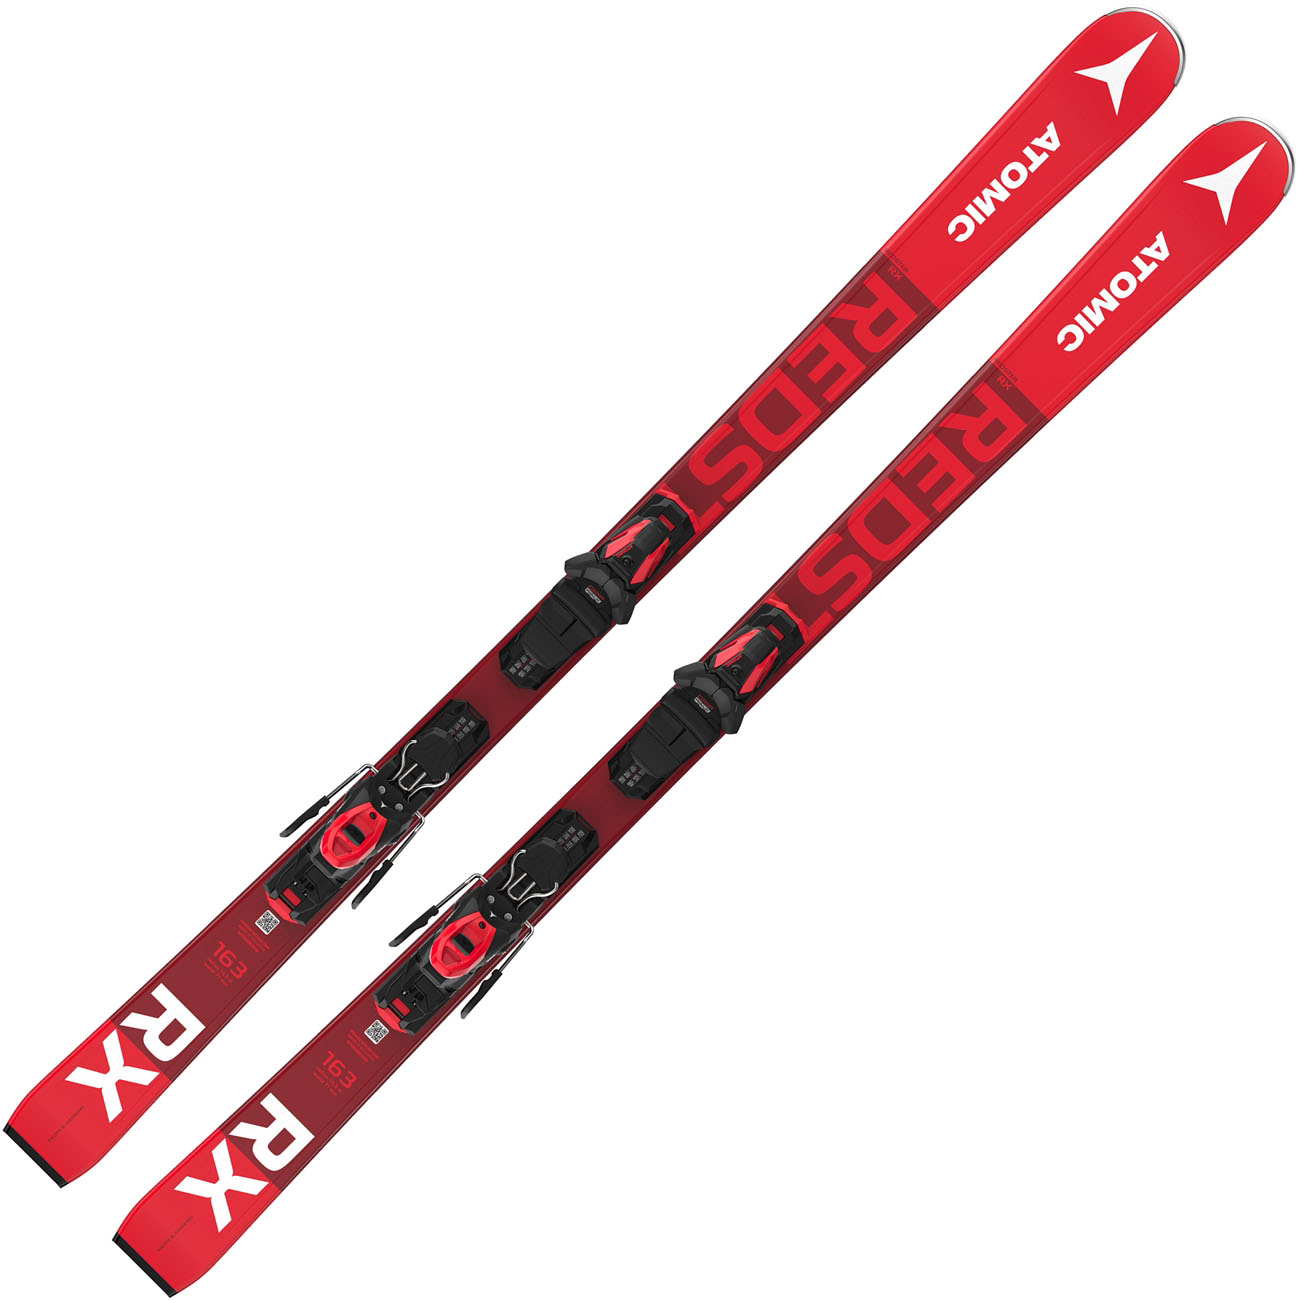 ATOMIC Redster RX AW Ski 2020/21